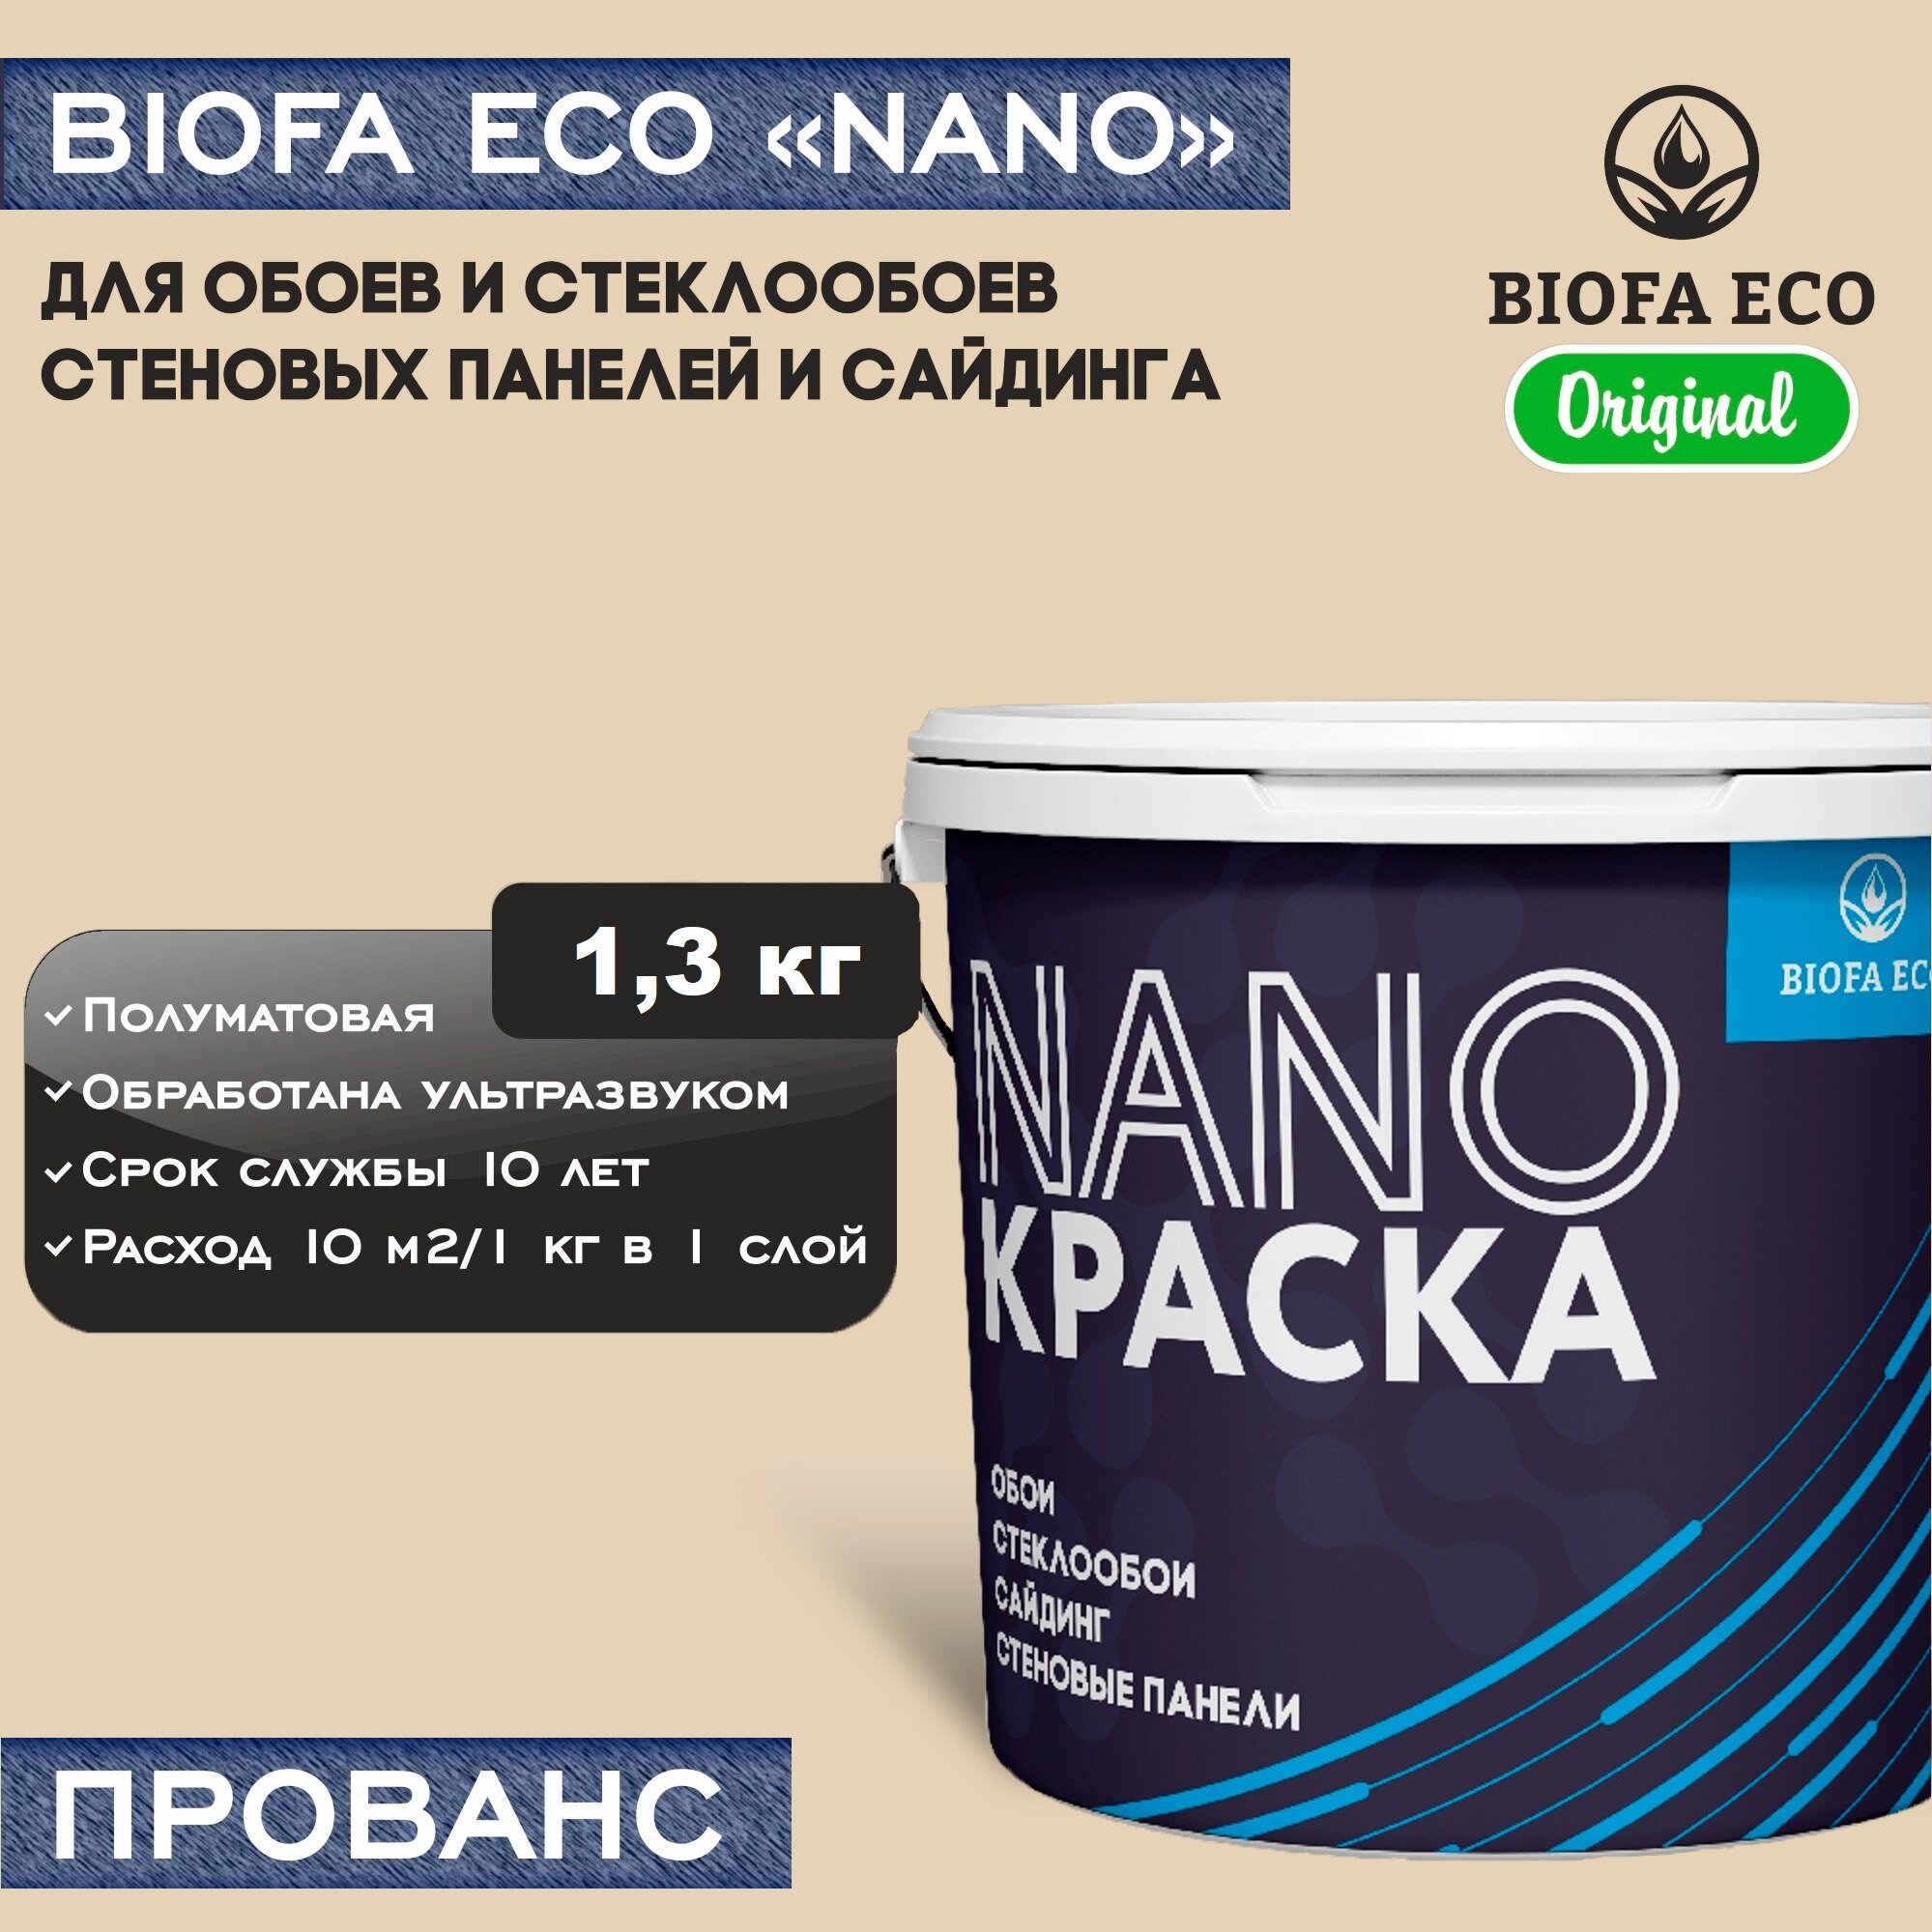 Краска BIOFA ECO NANO для обоев, стеклообоев, стеновых панелей и сайдинга, адгезионная, полуматовая, цвет прованс, 1,3 кг